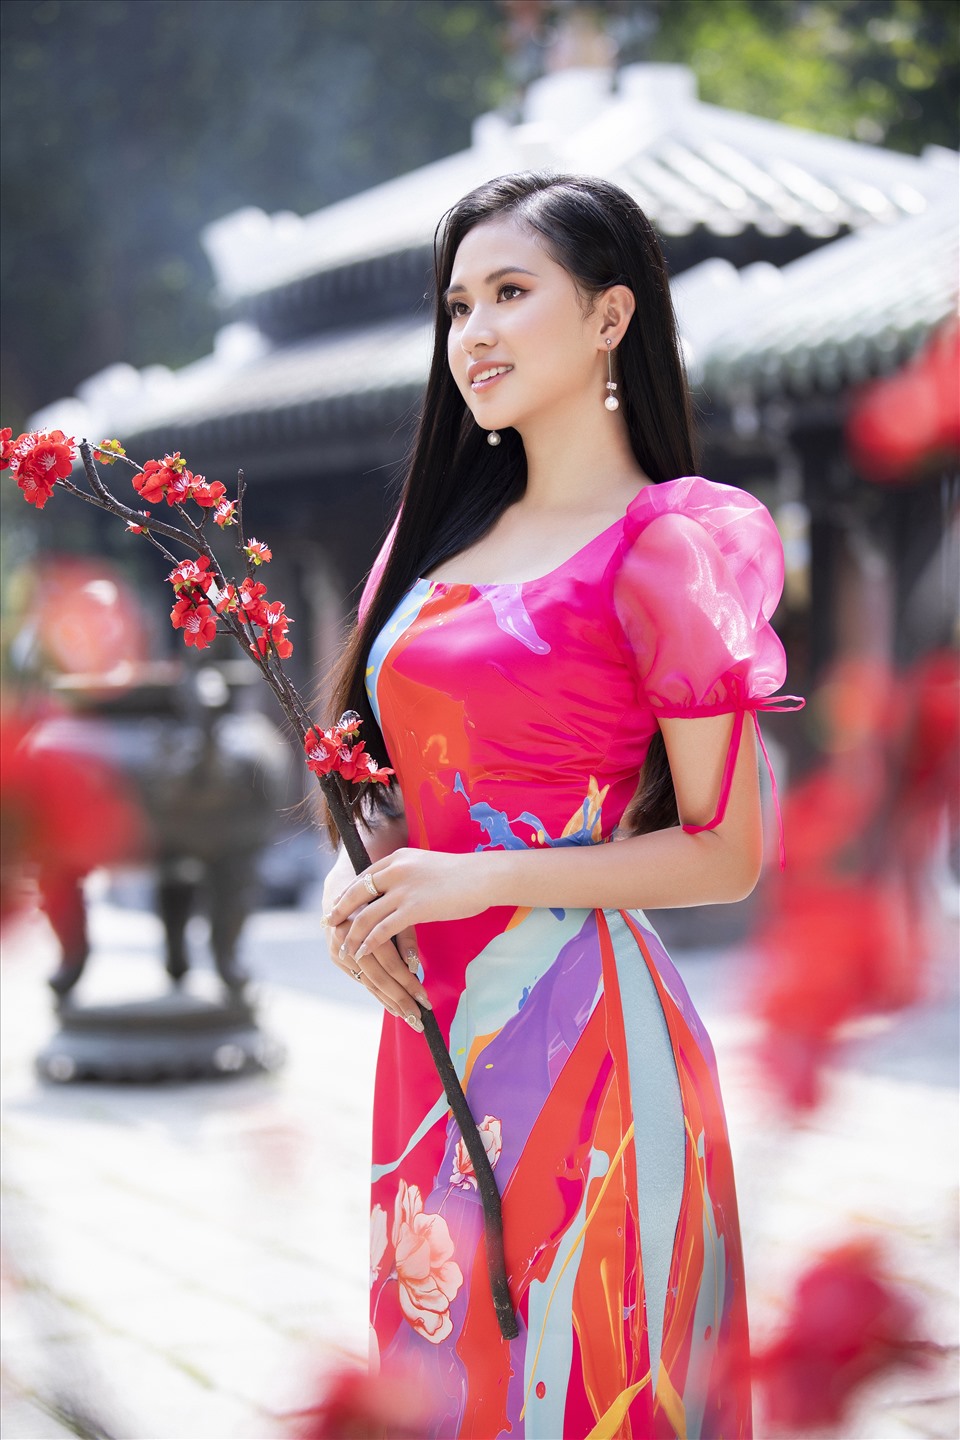 Sau cuộc thi Hoa hậu Việt Nam 2020, cô sinh viên năm nhất Đại học Kinh tế - Tài chính TP.HCM UEF) là gương mặt sáng giá của showbiz Việt. Ảnh: NVCC.